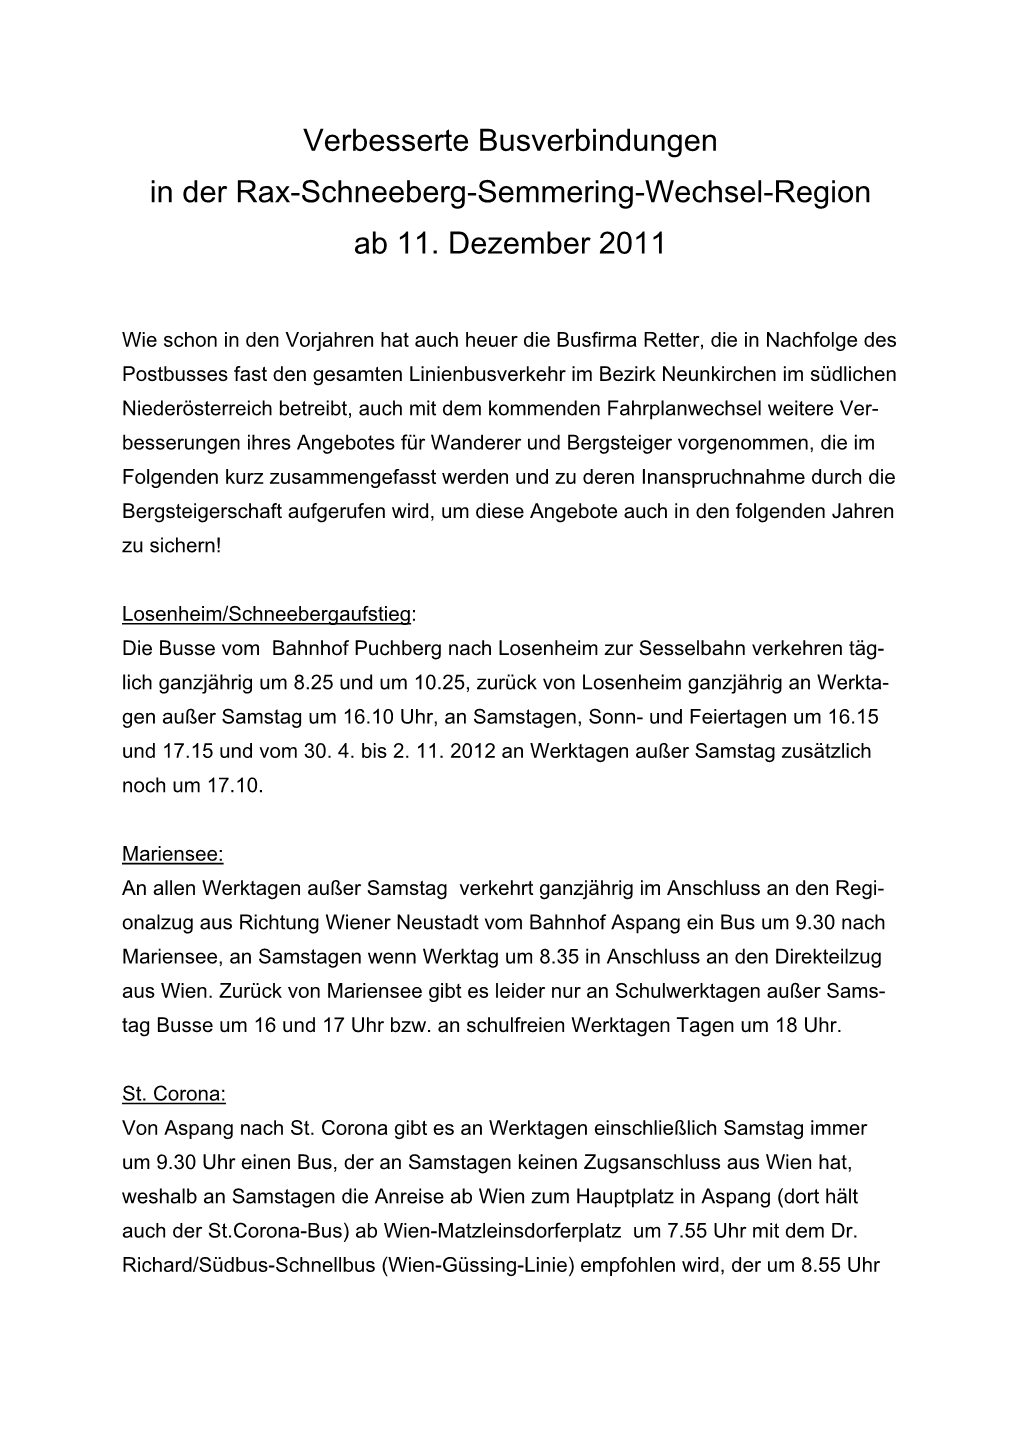 Verbesserte Busverbindungen in Der Rax-Schneeberg-Semmering-Wechsel-Region Ab 11. Dezember 2011